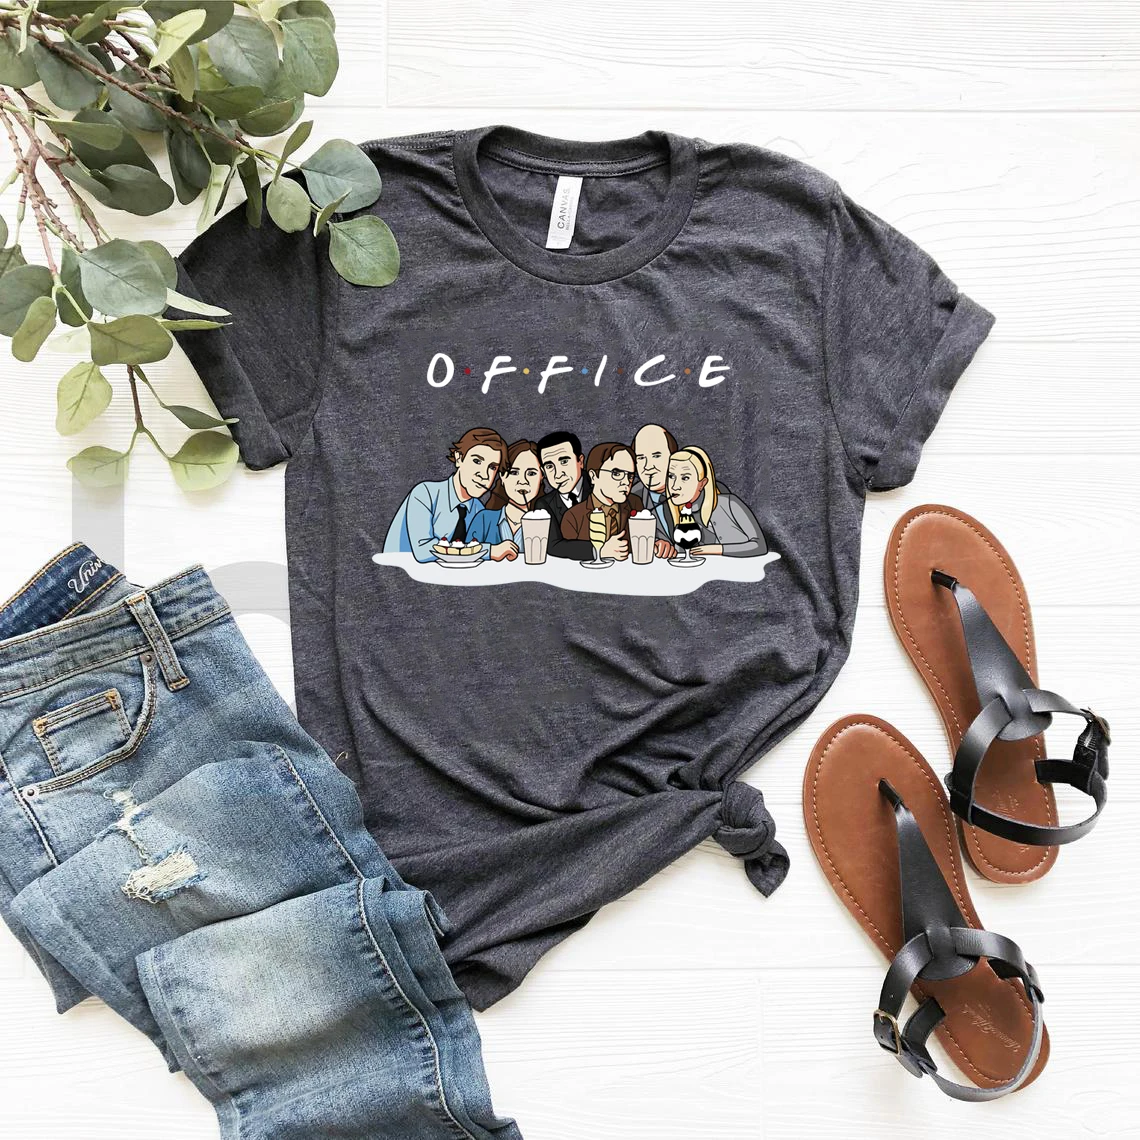 

The Office Friends T-Shirt Michael Scott Shirt US Office Tshirt The Office Tv Show Shirts Unisex Summer Plus Size Tee Casual Top